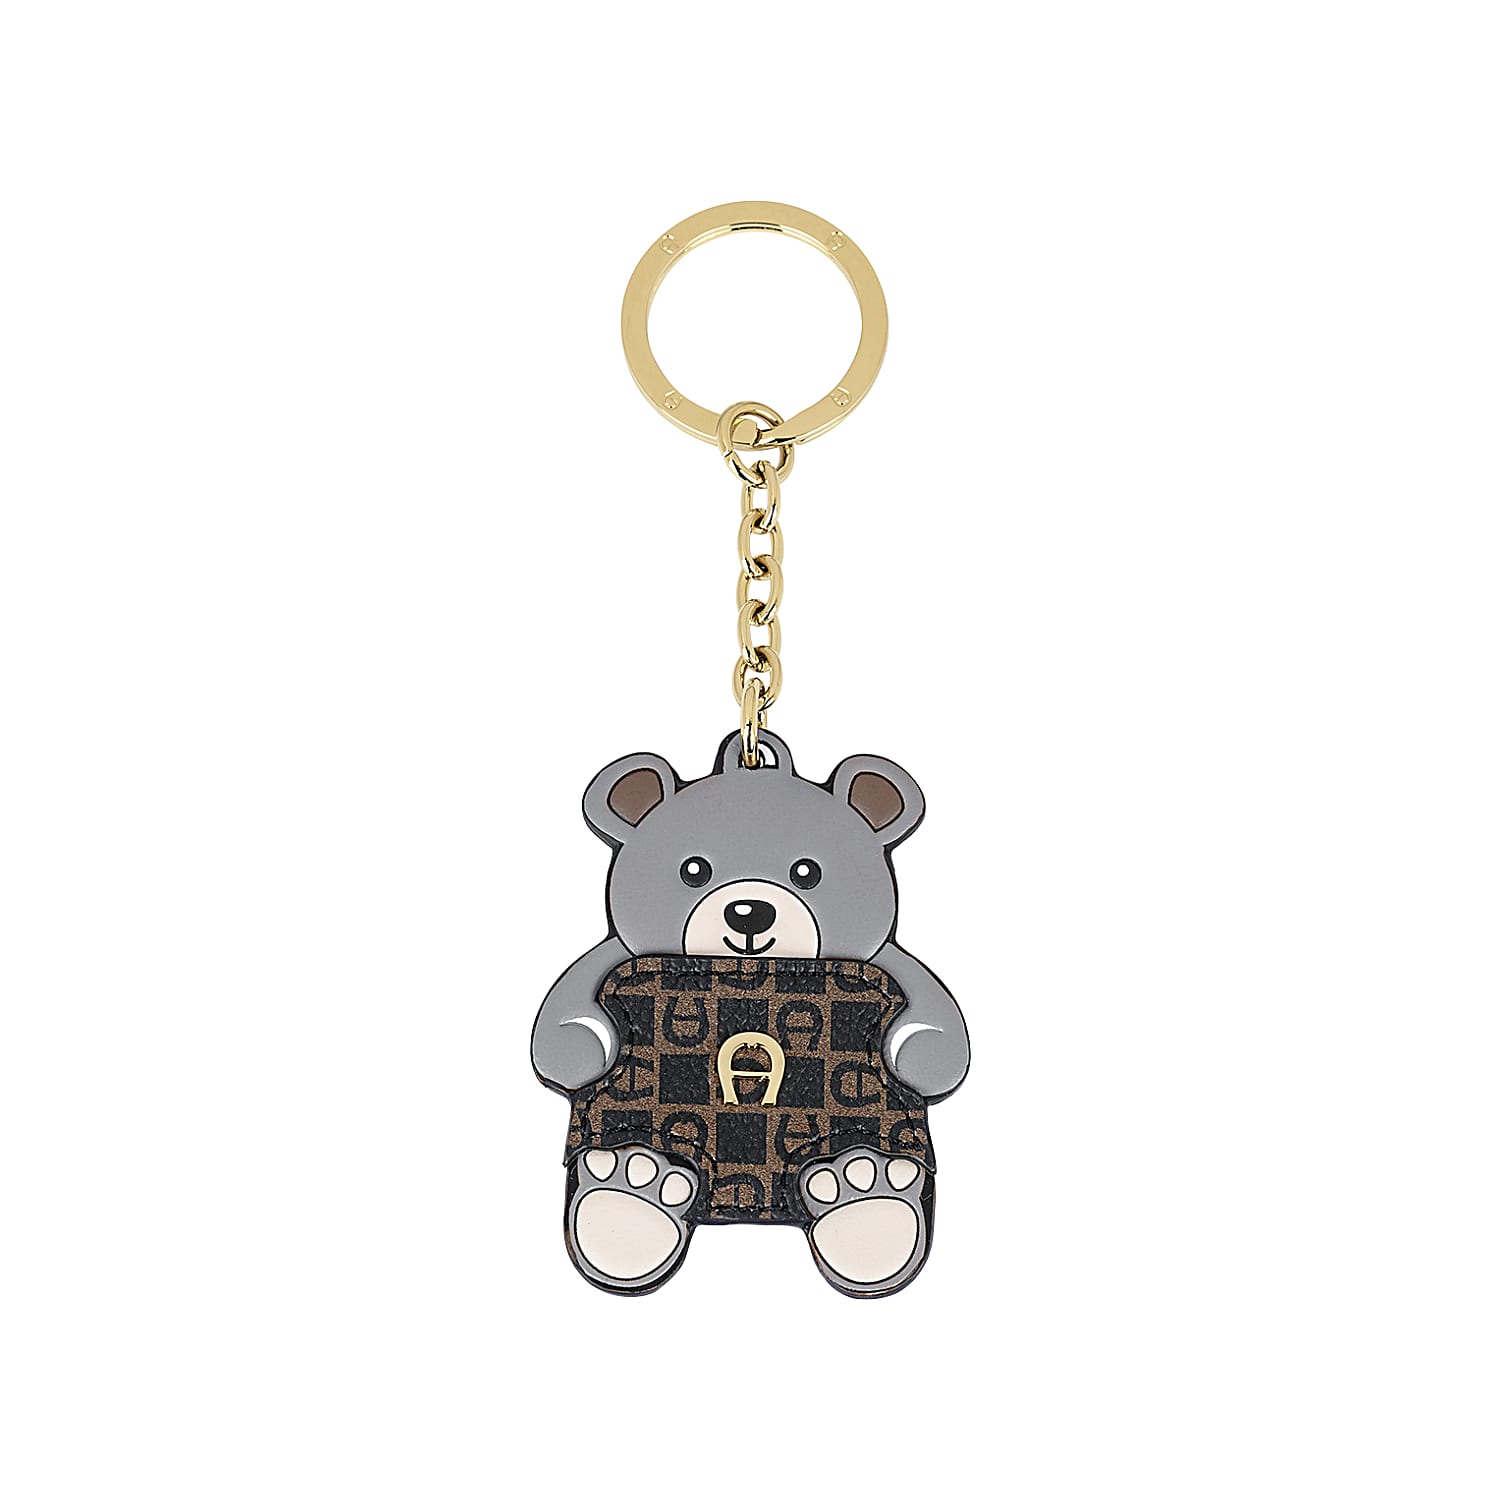 Schlüsselanhänger Teddybär Dadino